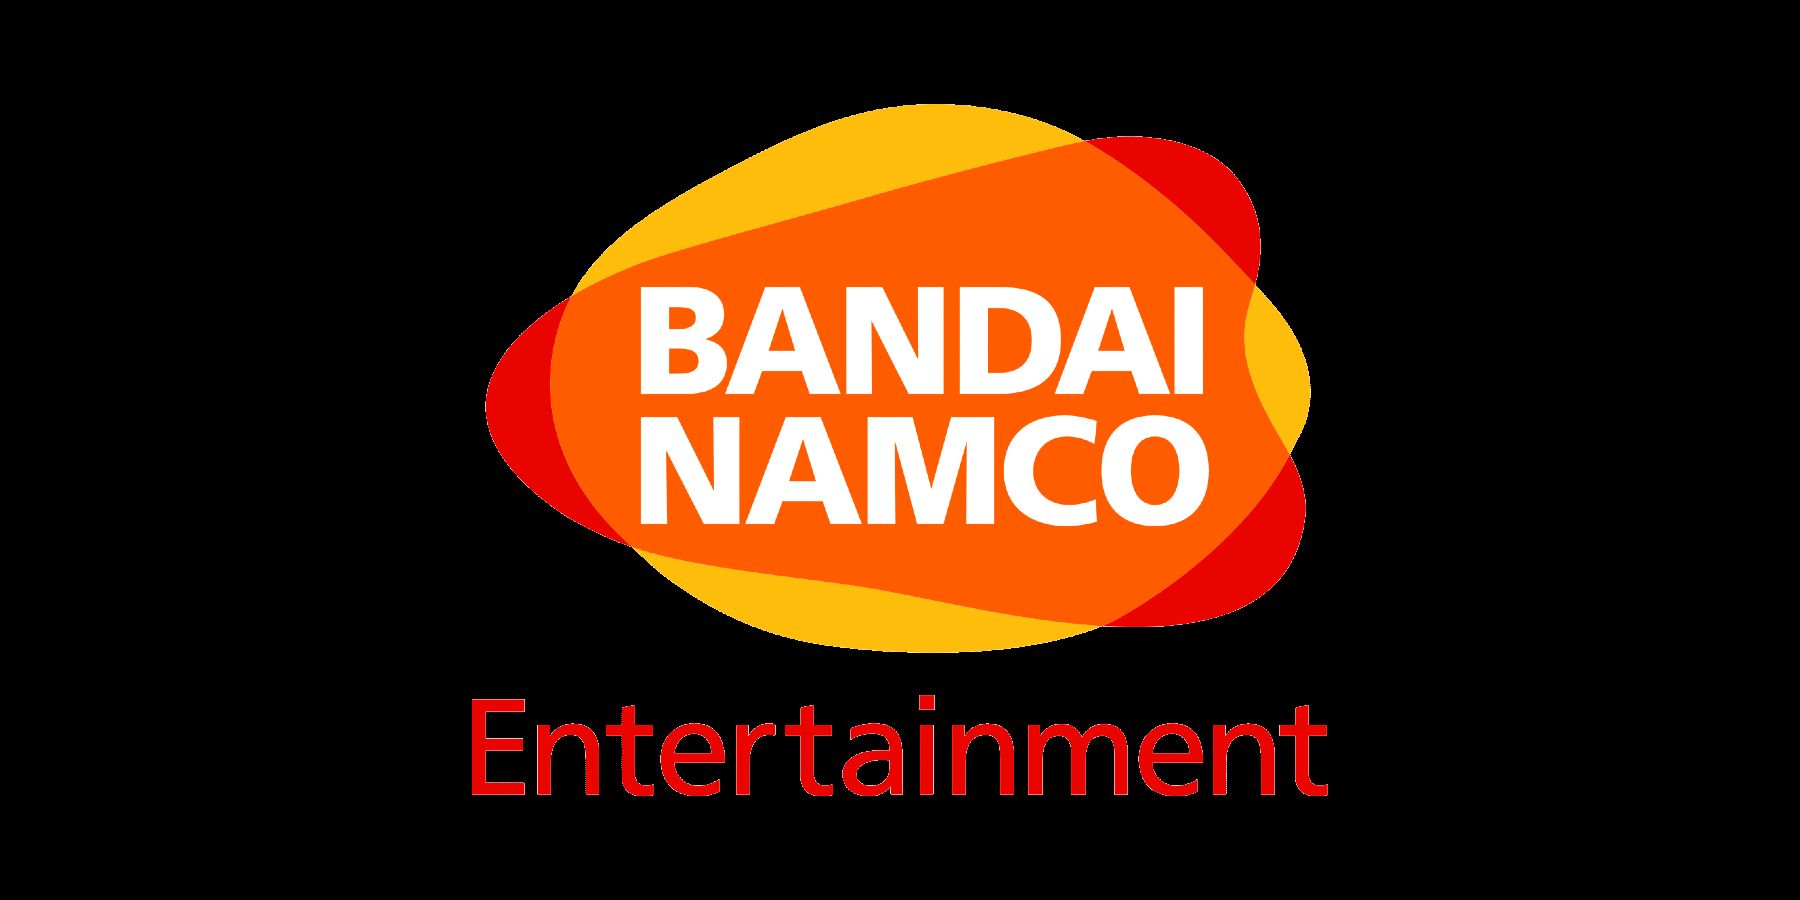 Bandai Namco heeft een nieuw logo